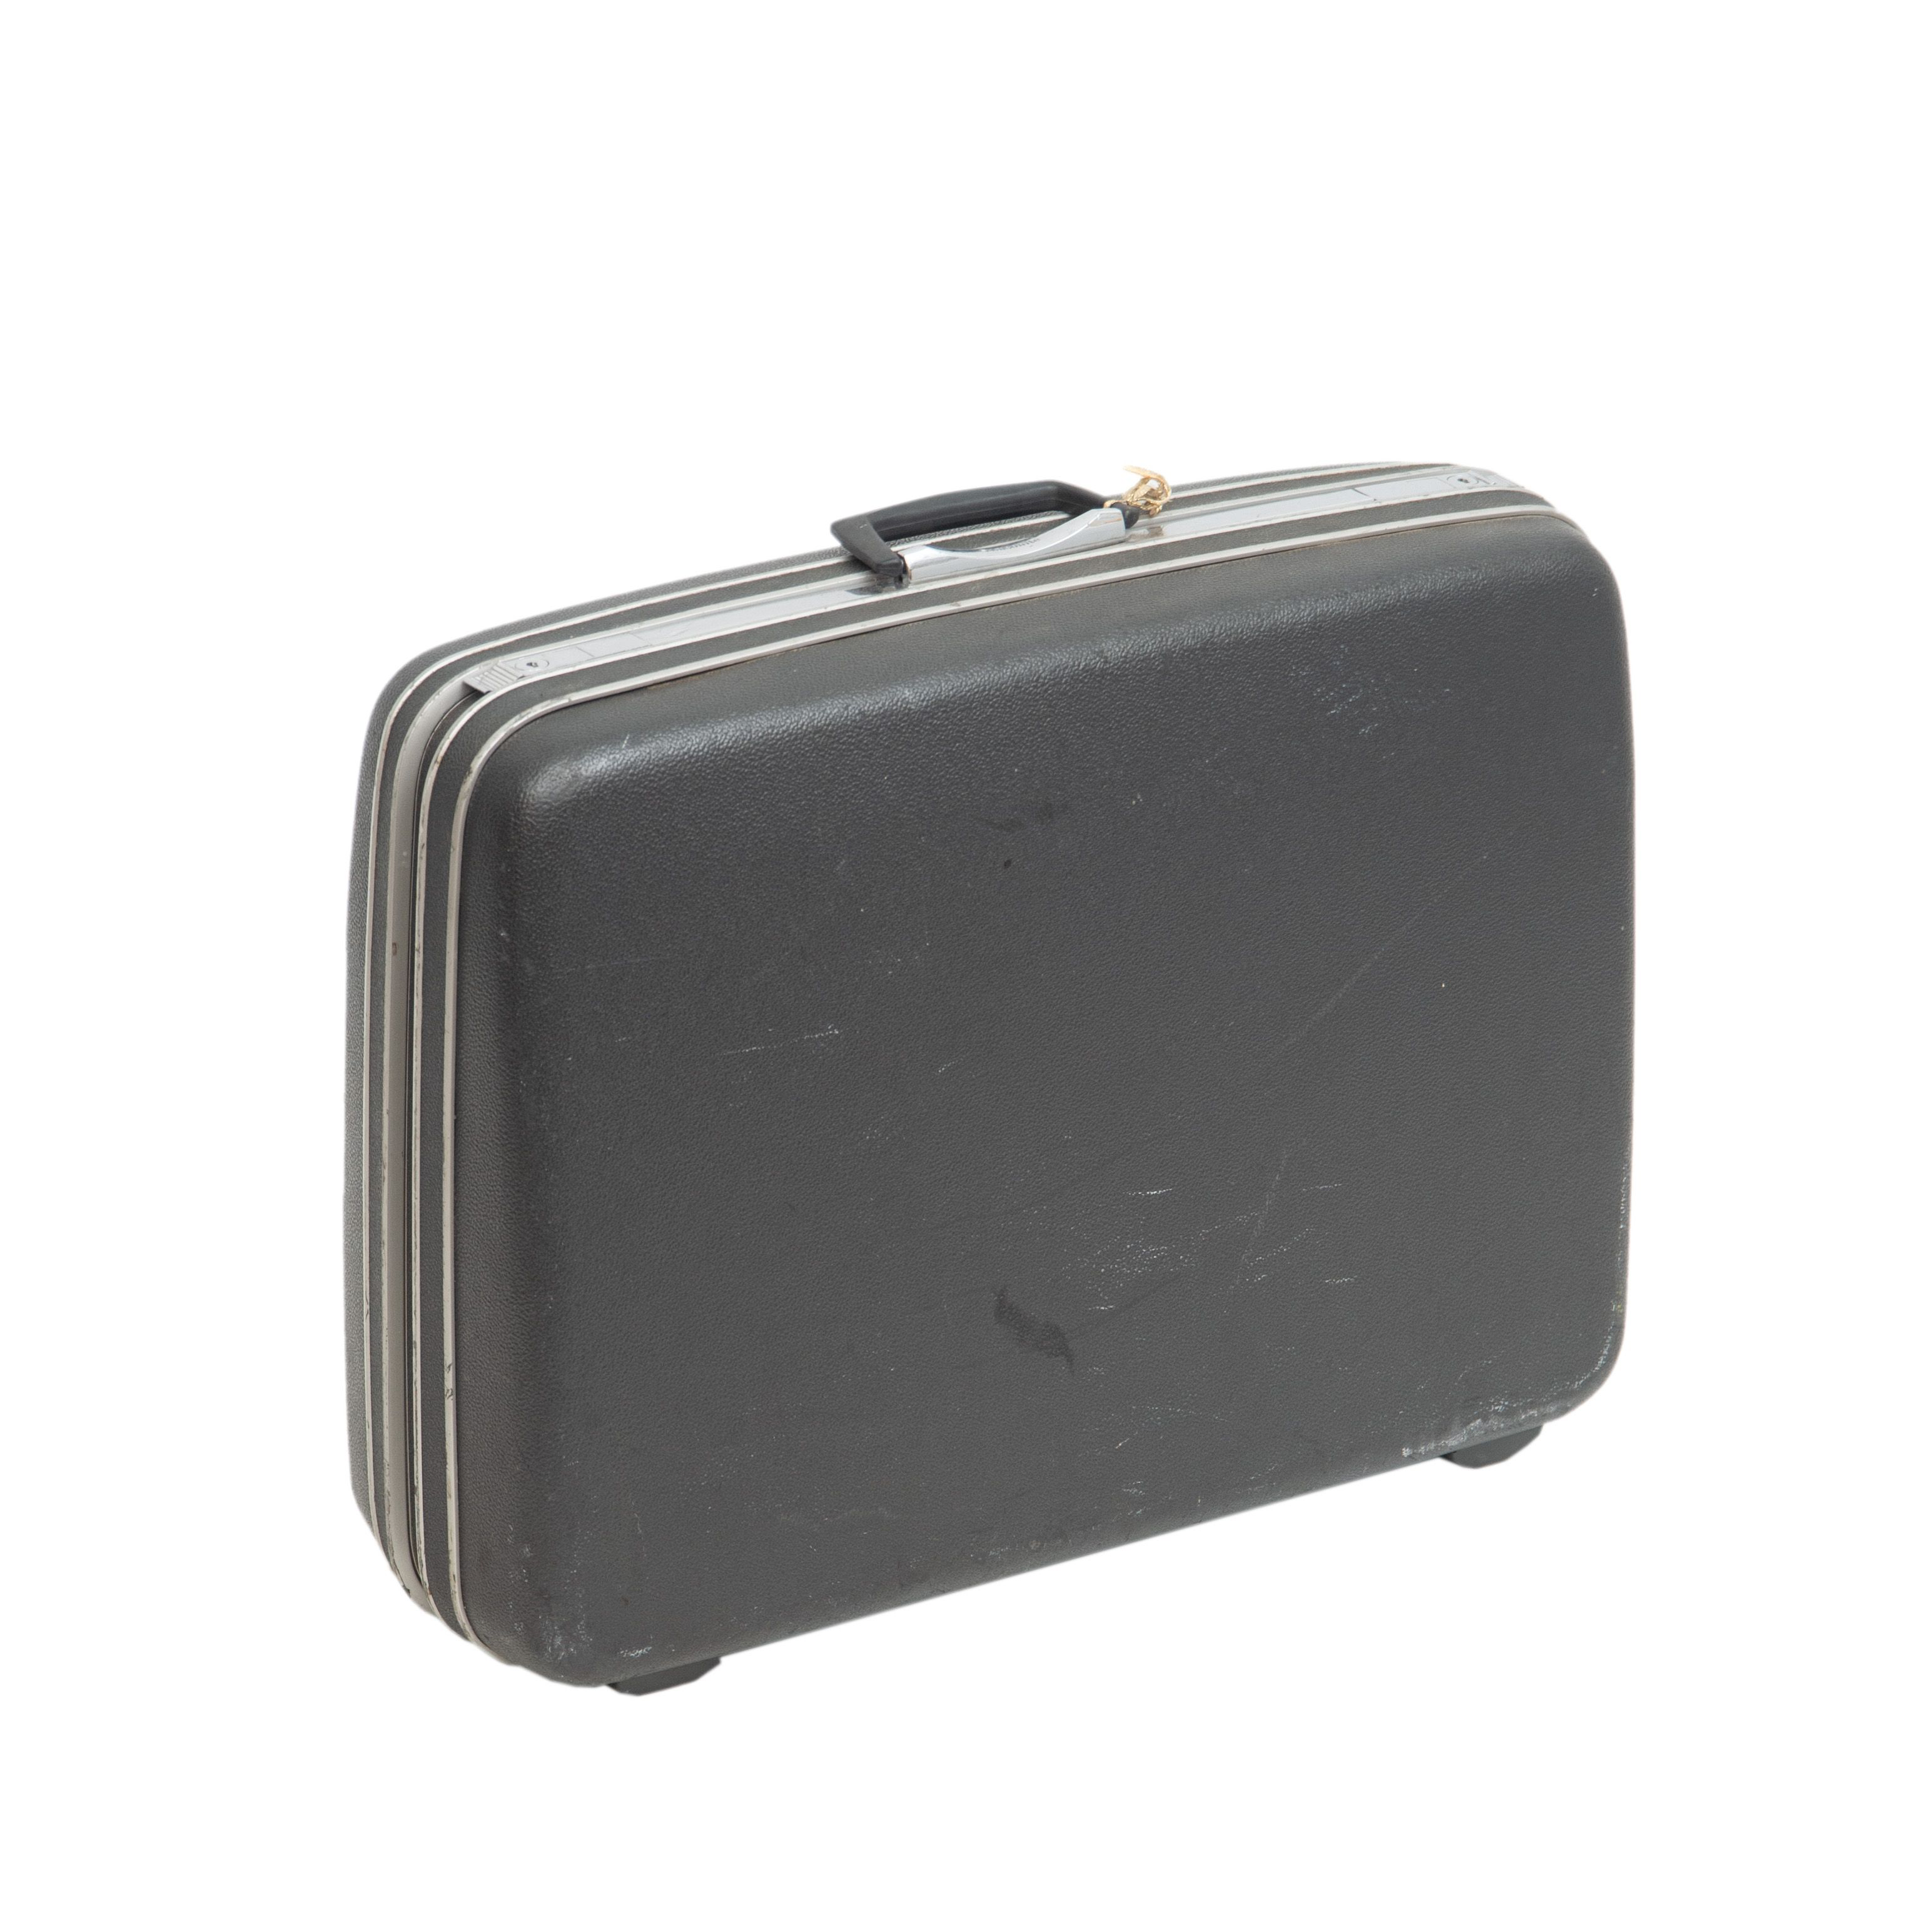 Samsonite Grey Suitcase